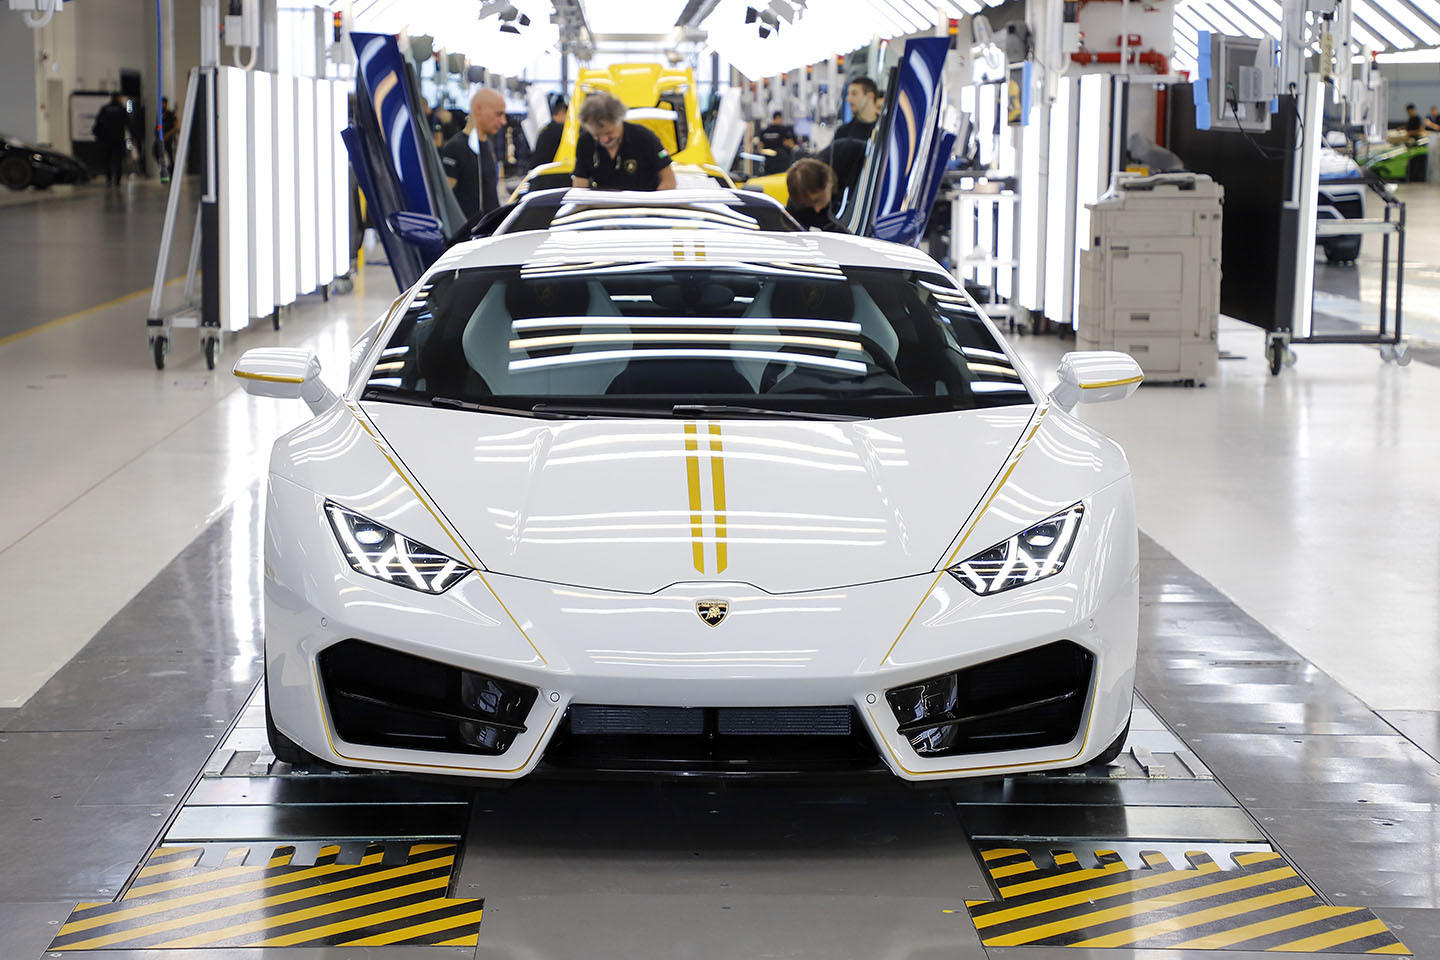 El Papa Francisco recibe un Lamborghini personalizado, por una buena causa  | Diariomotor